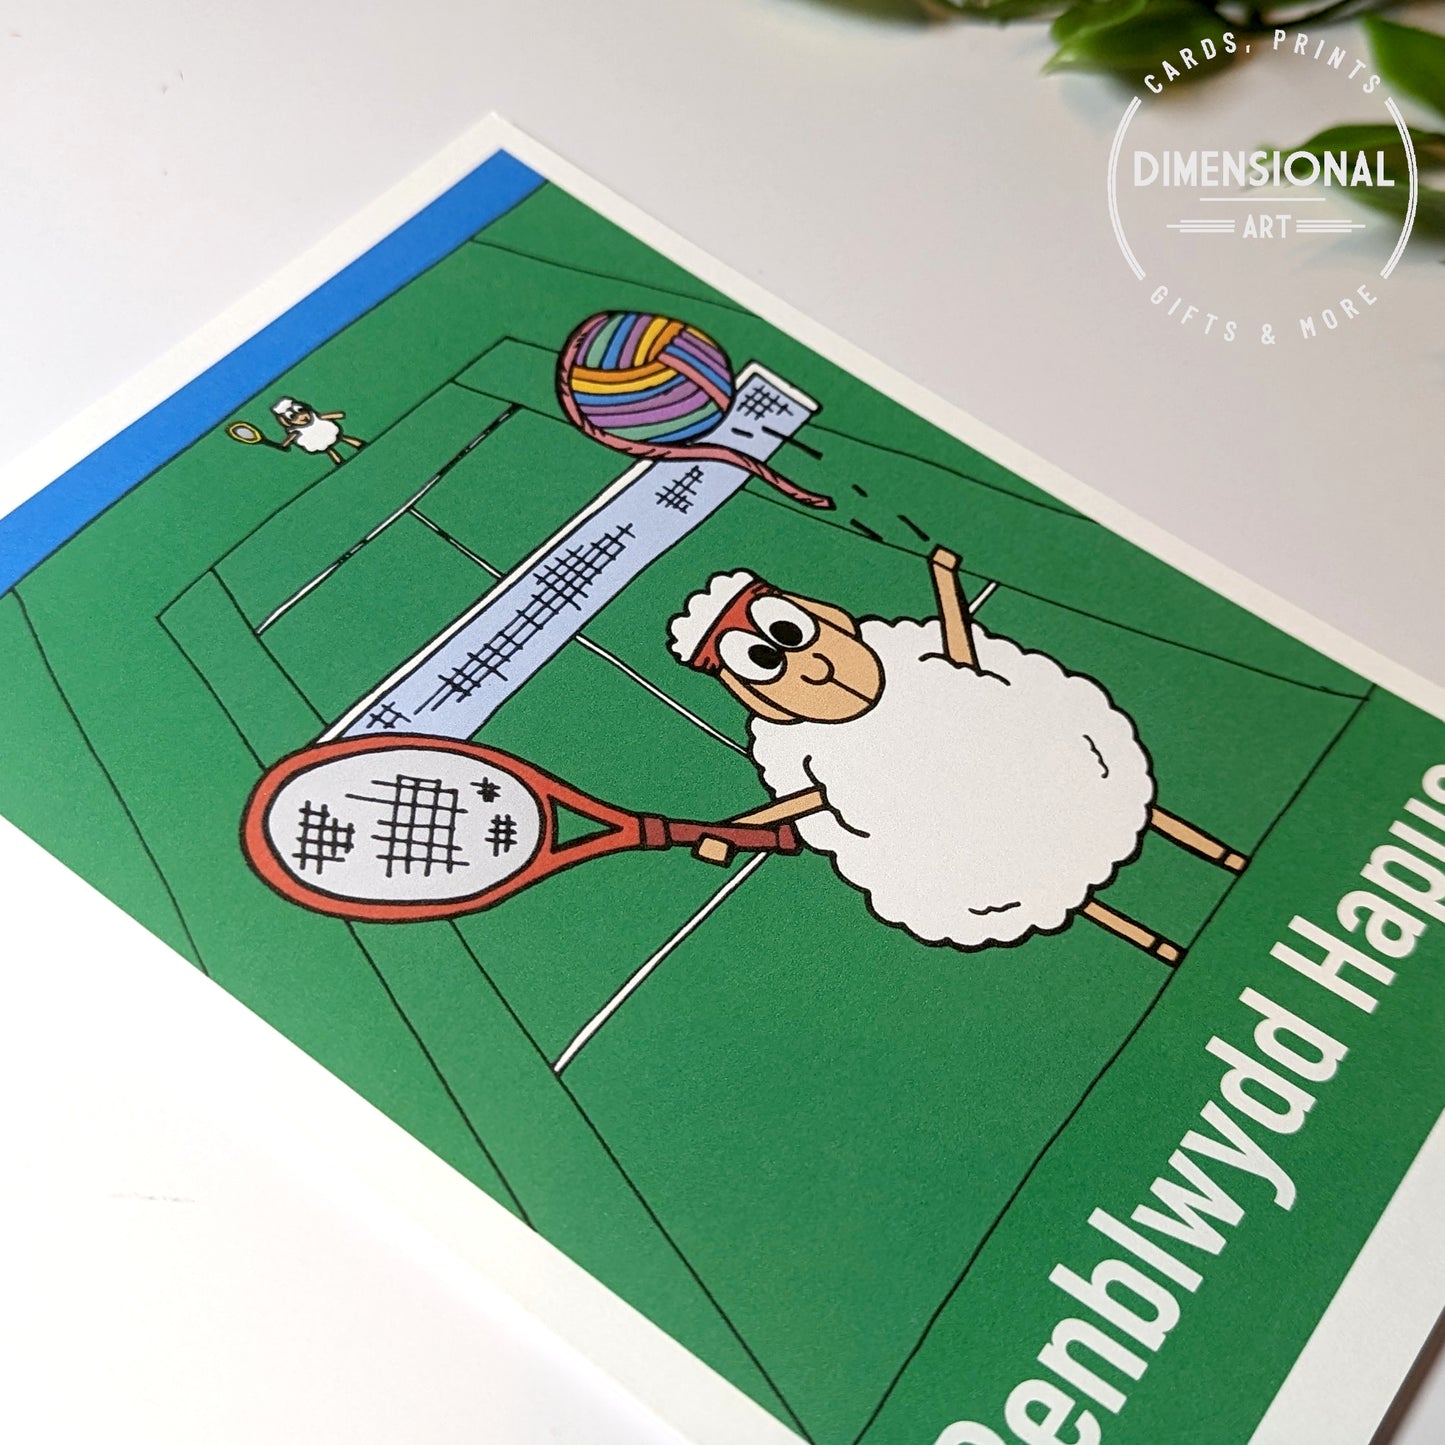 Penblwydd Hapus (Tennis) Sheep (Birthday) Card WELSH